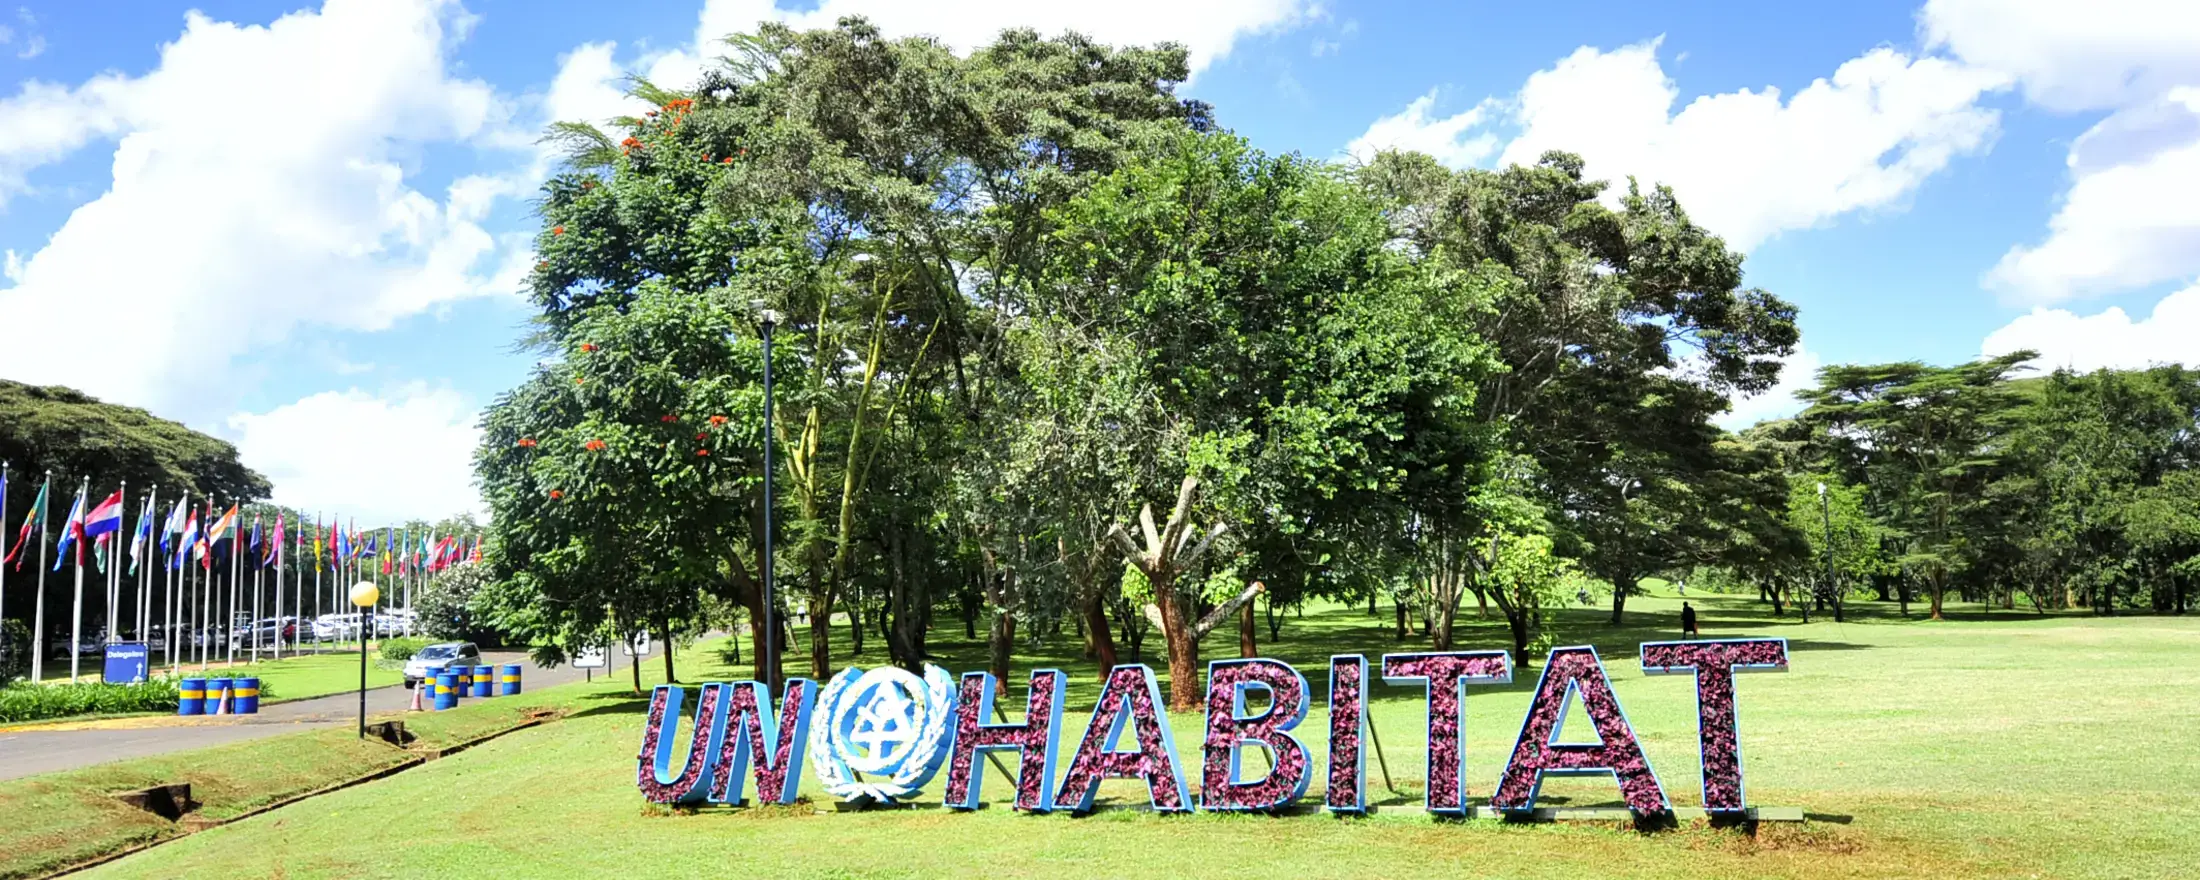 UN-Habitat generic featured image